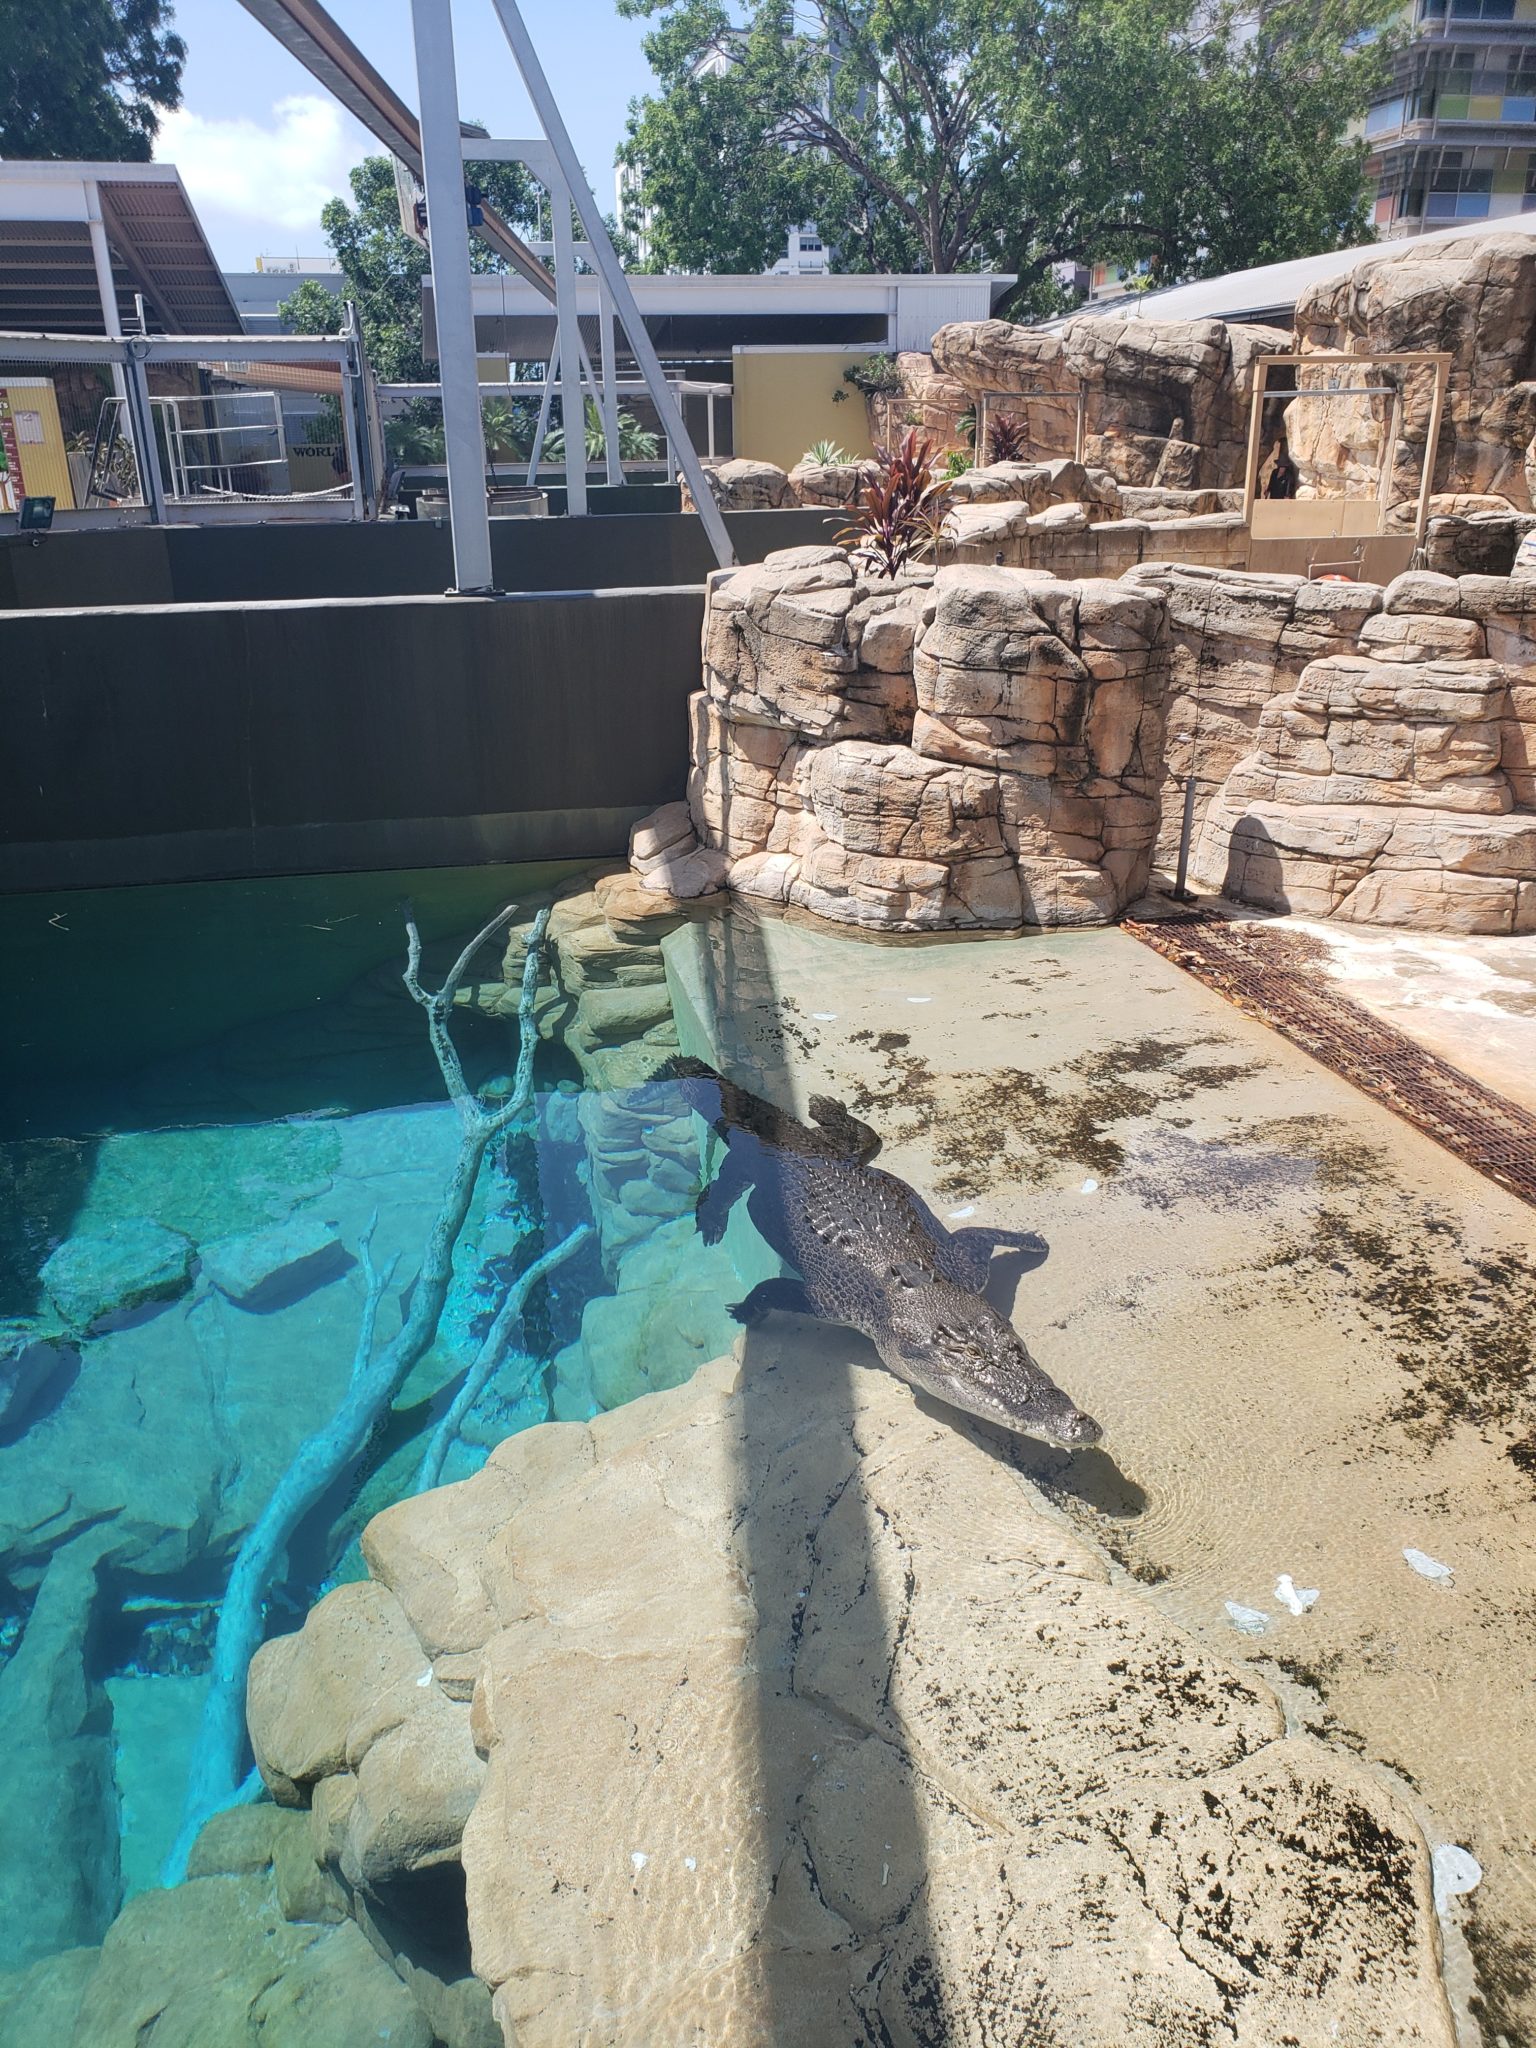 a crocodile in a pool